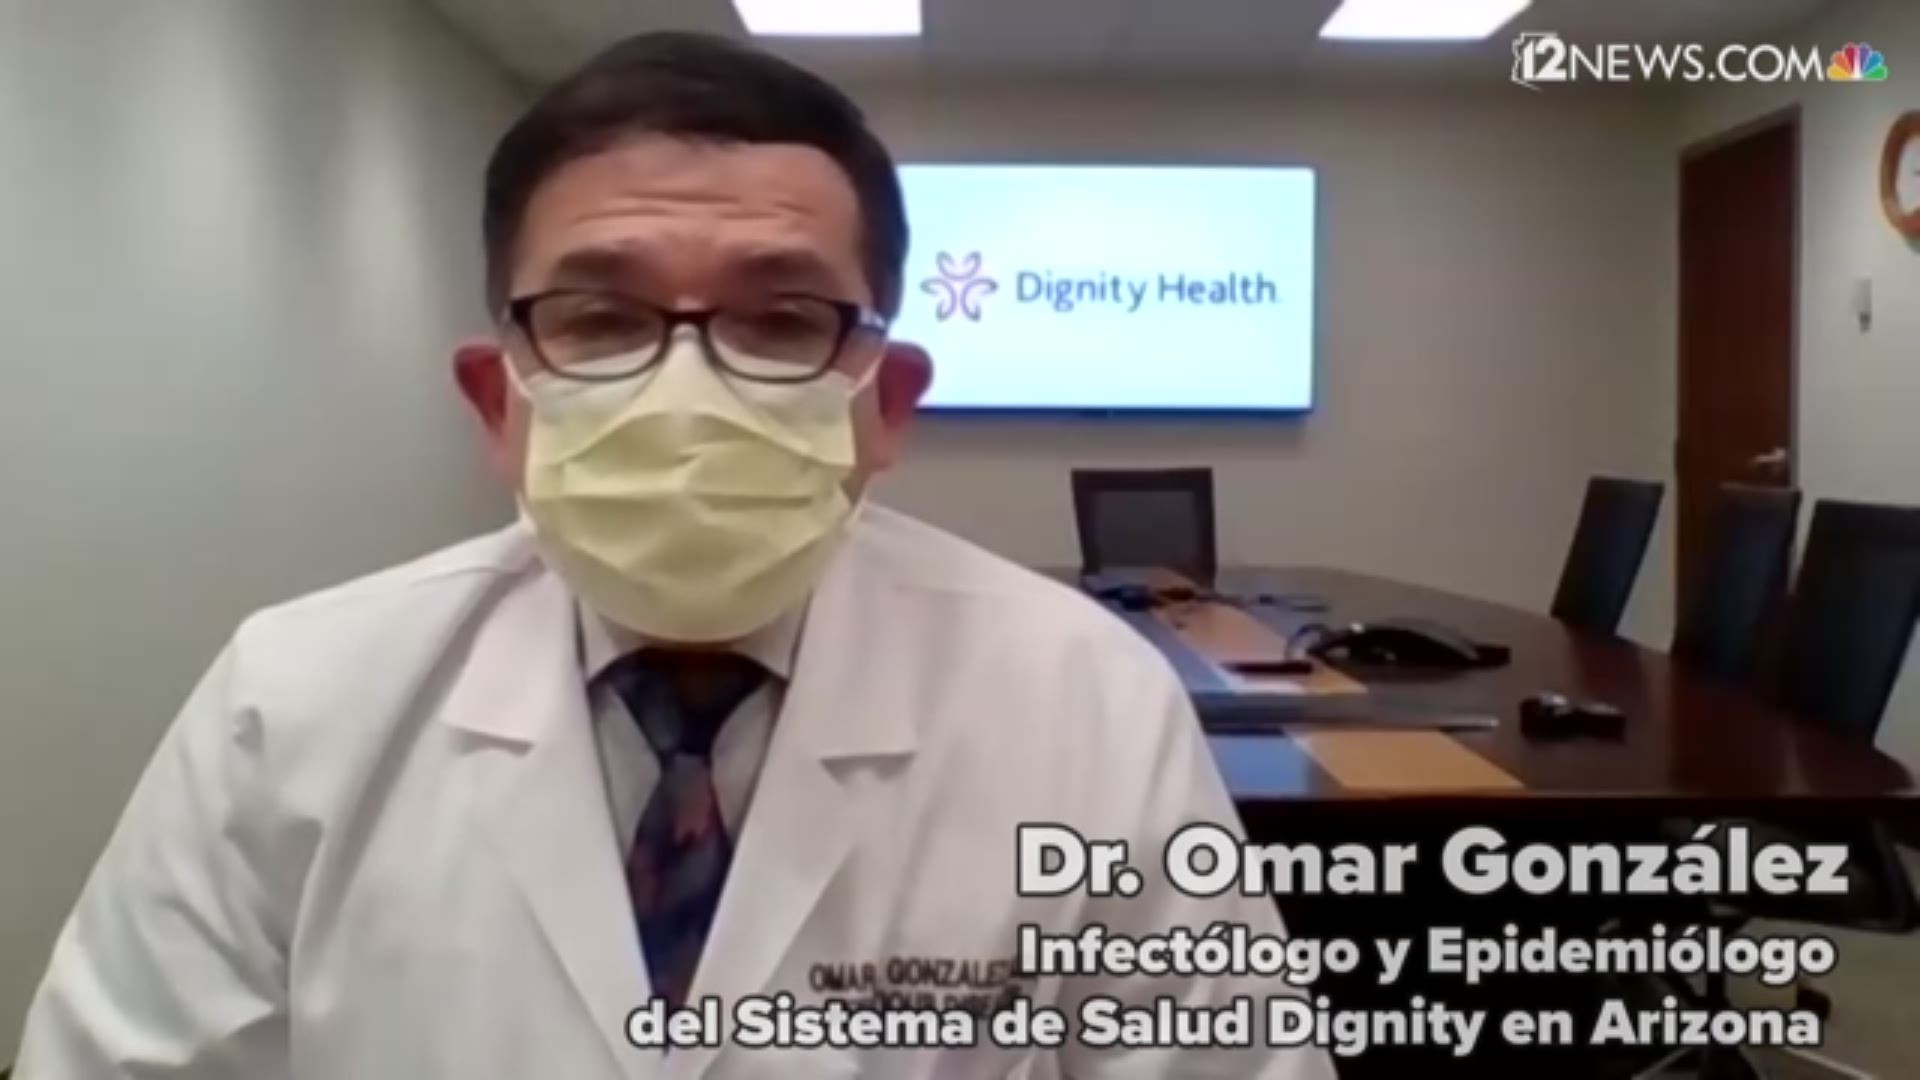 La comunidad hispana, más que cualquier otro grupo étnico, se ha visto afectada por contagios del COVID-19 y hospitalizaciones. Un doctor de Dignity Health explica.